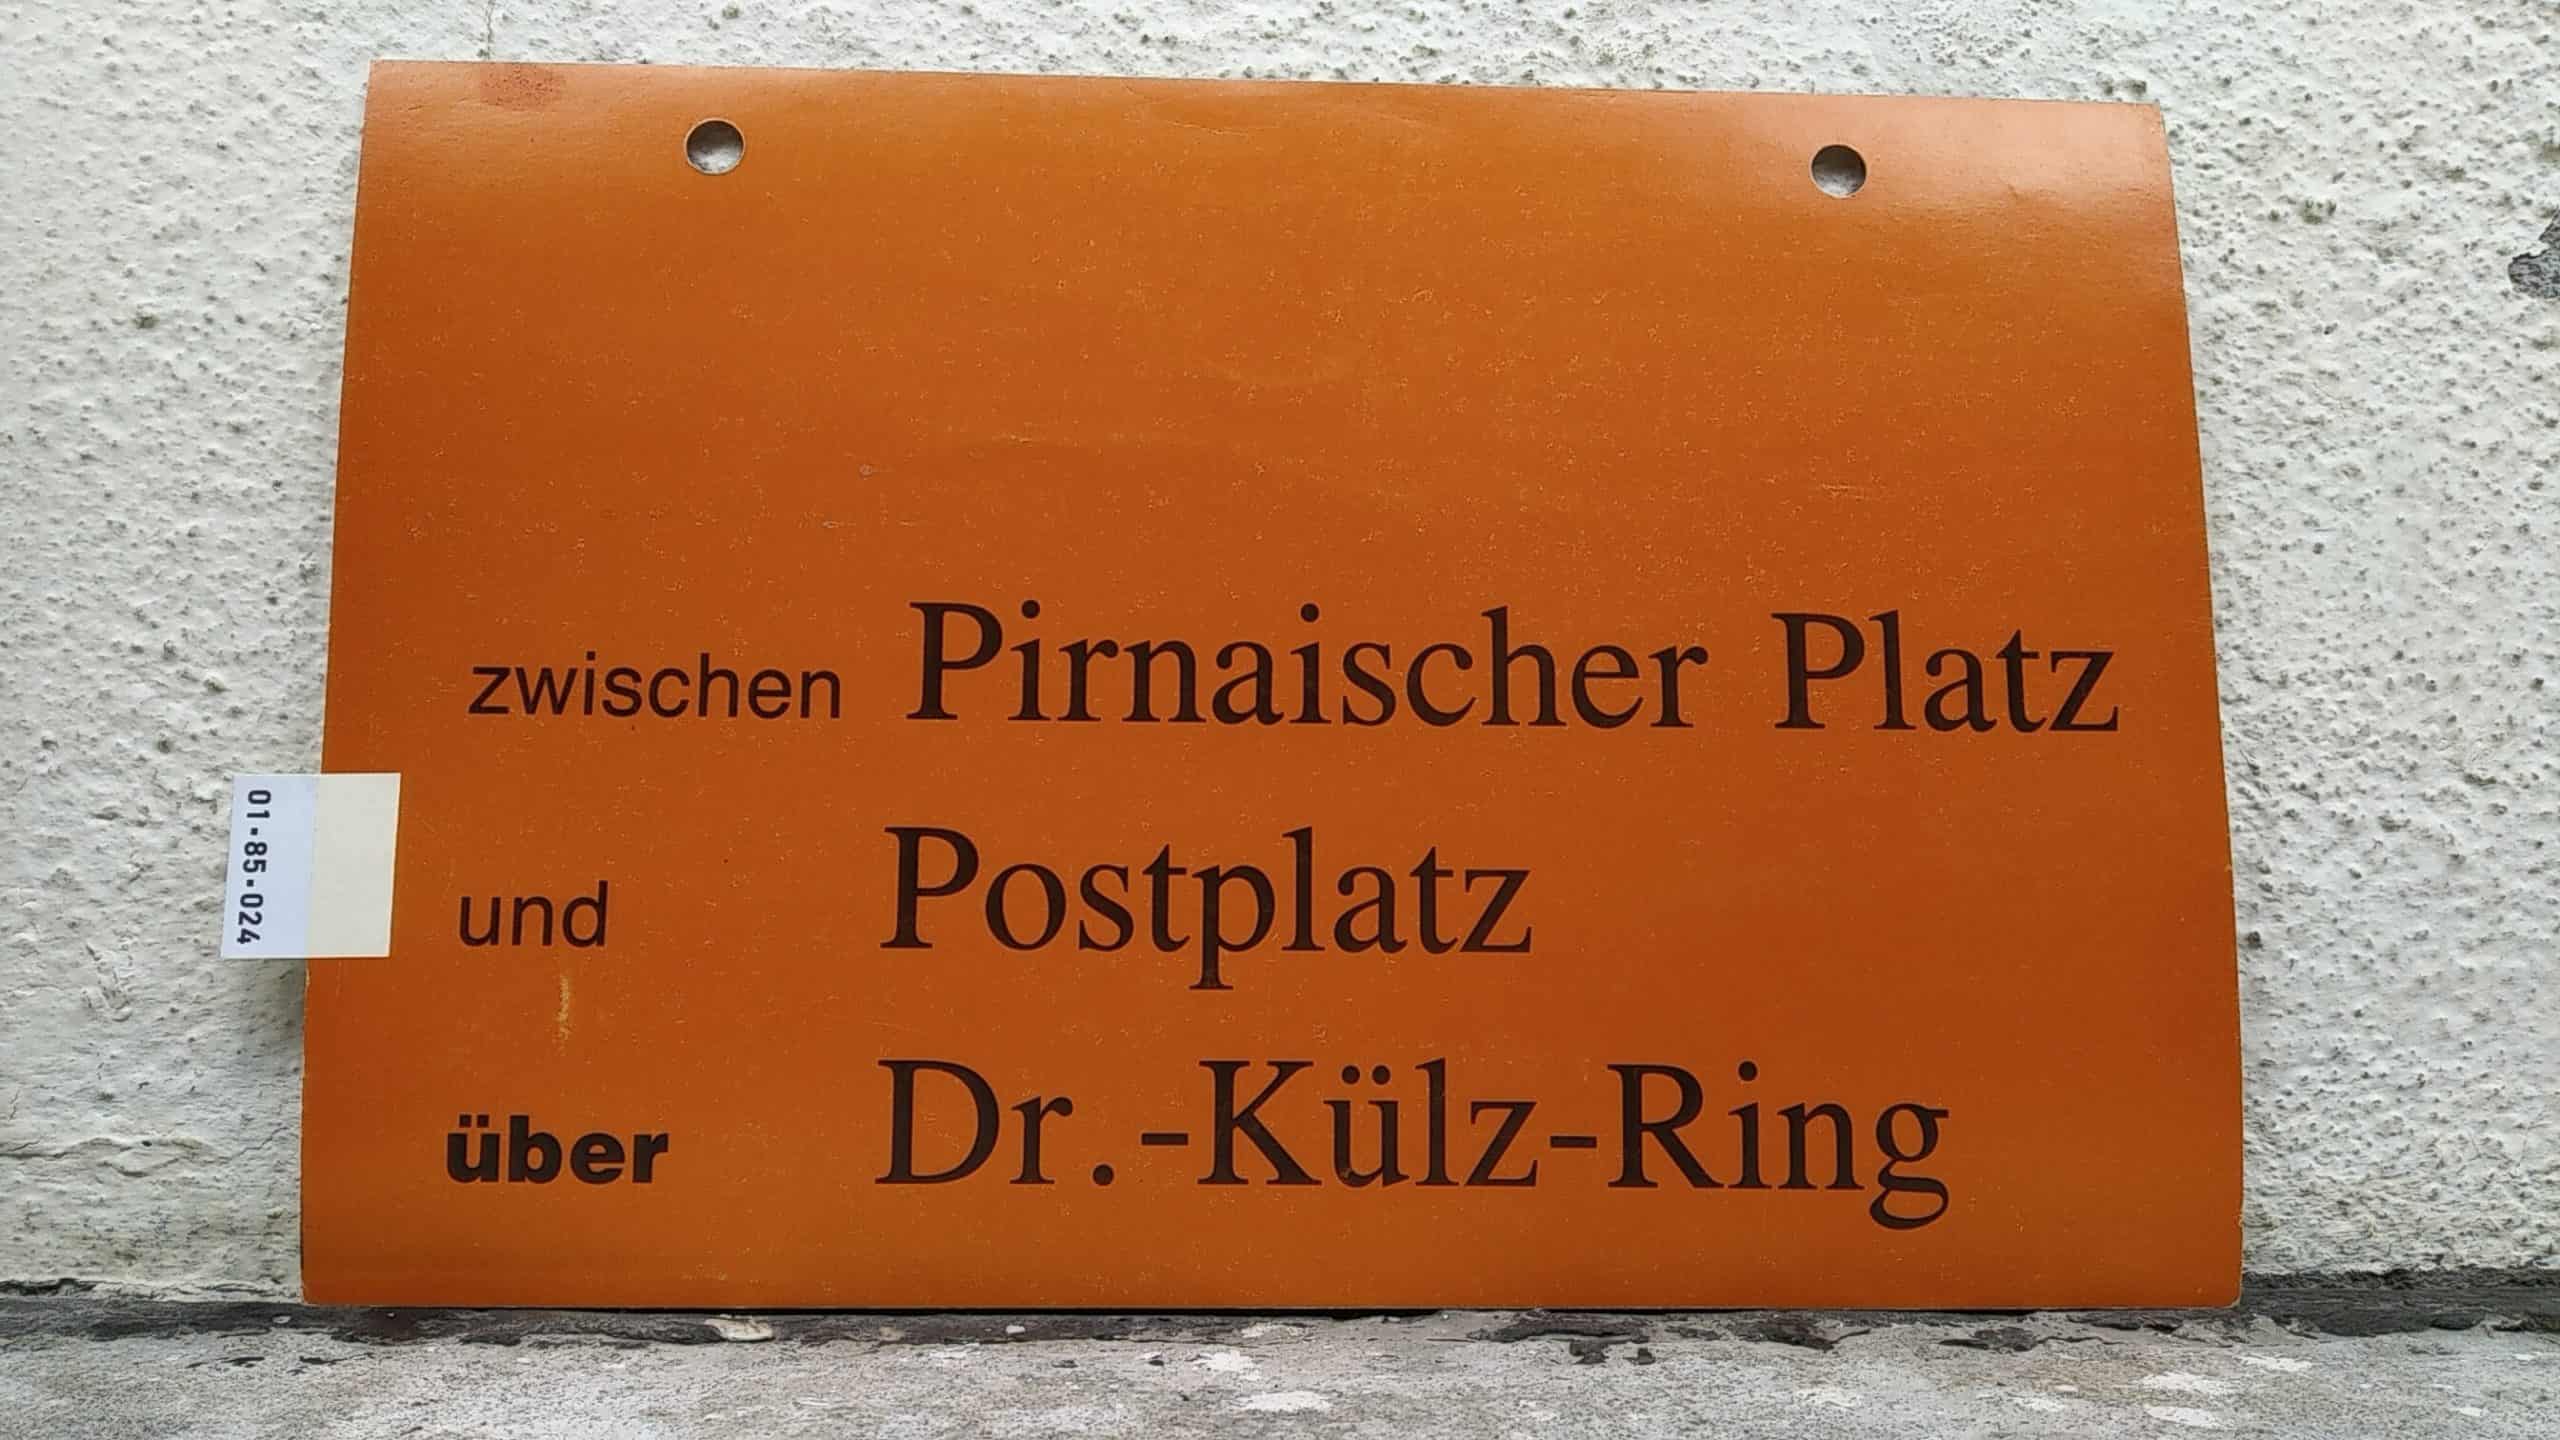 Ein seltenes Straßenbahn-Umleitungsschild aus Dresden: zwischen Pirnaischer Platz und Postplatz über Dr.-Külz-Ring